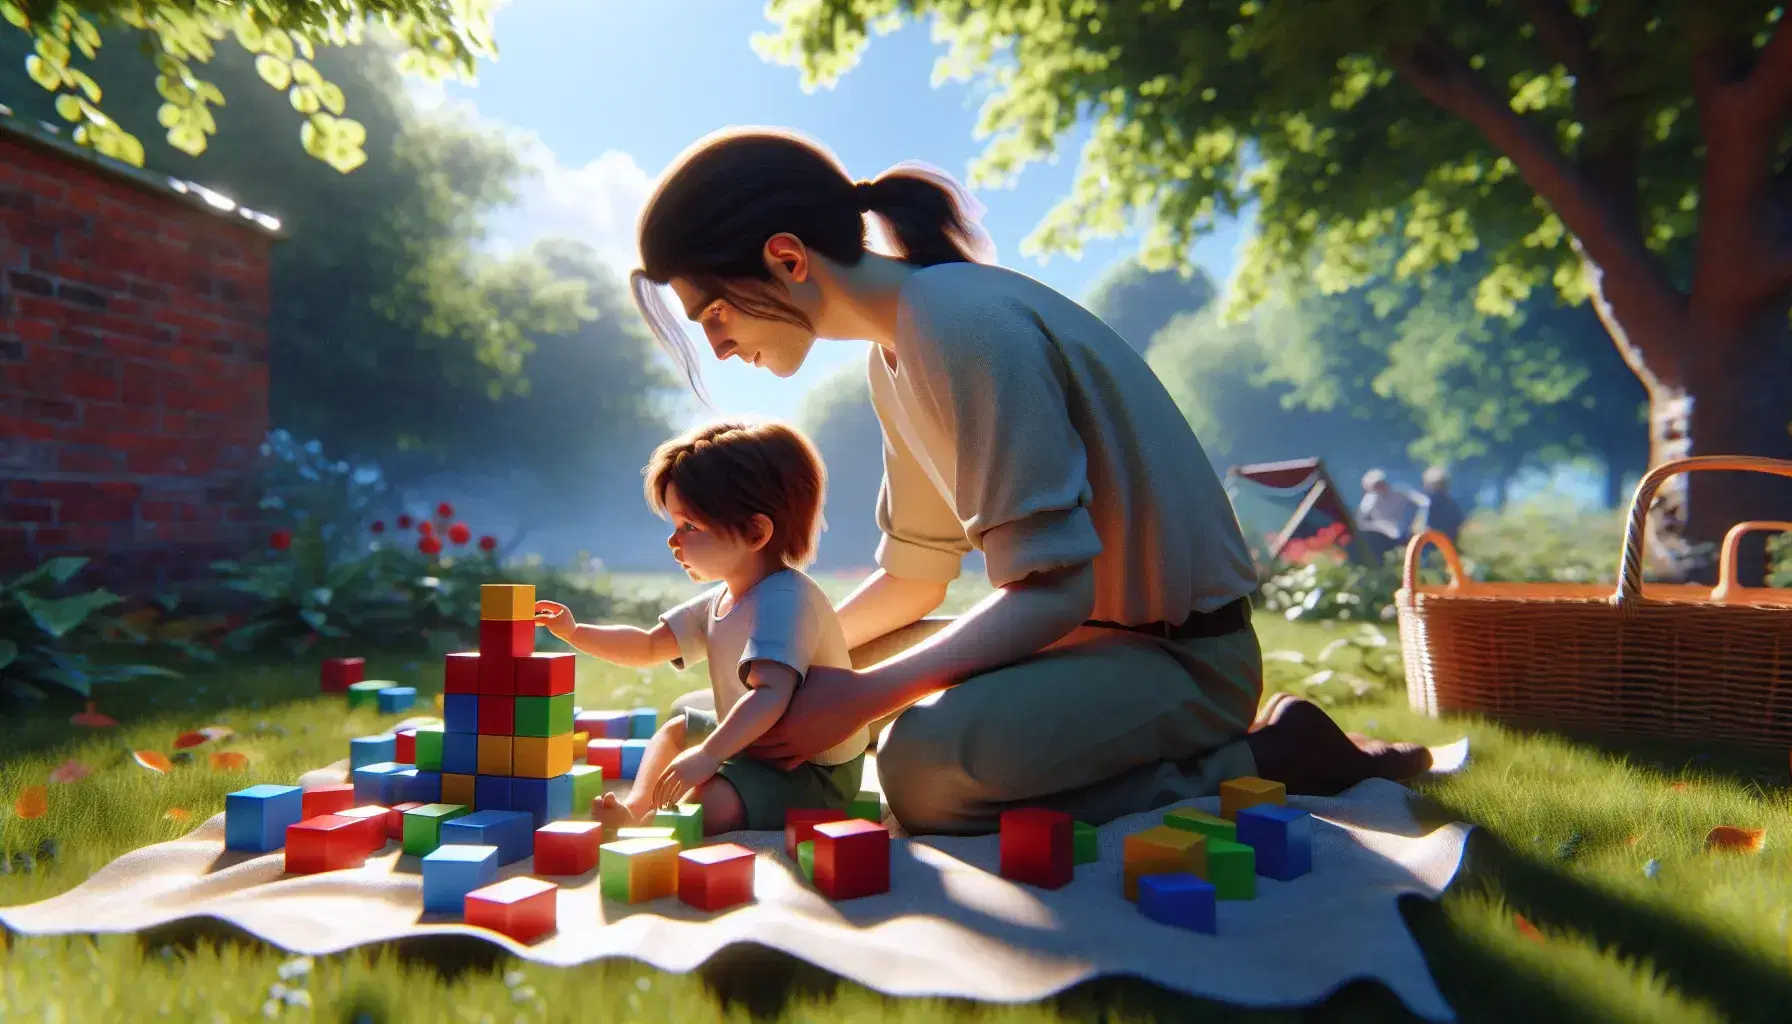 Bambino piccolo gioca con blocchi colorati su prato verde, adulto accanto sorveglia, alberi e cielo azzurro sullo sfondo.